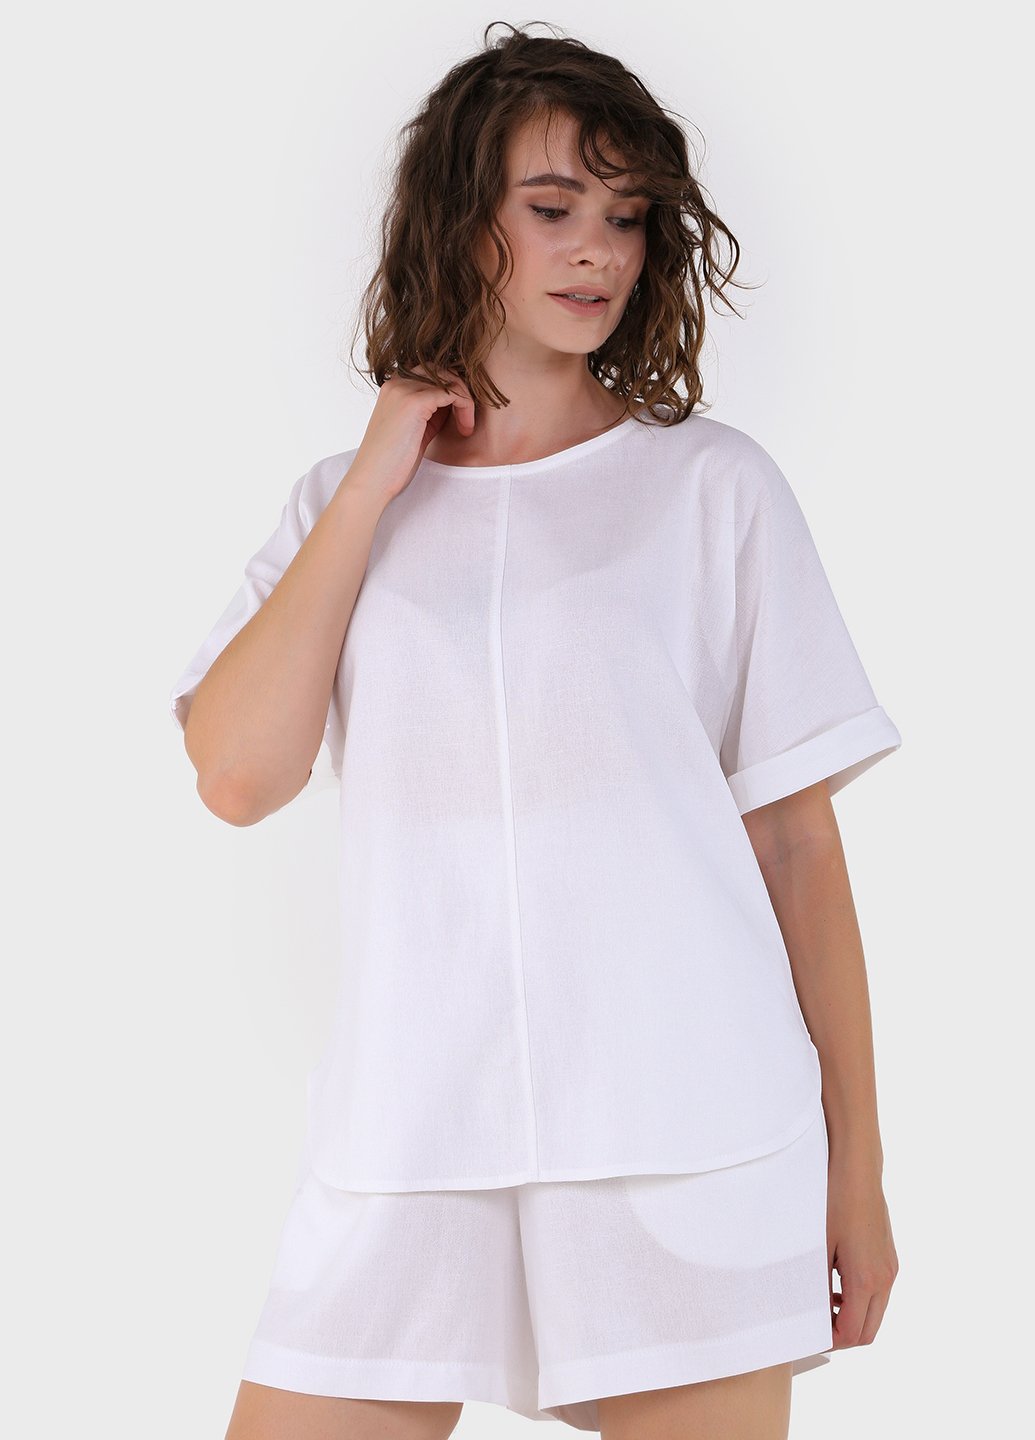 Купить Оверсайз льняная футболка женская белого цвета Merlini Лацио 800000035, размер 42-44 в интернет-магазине